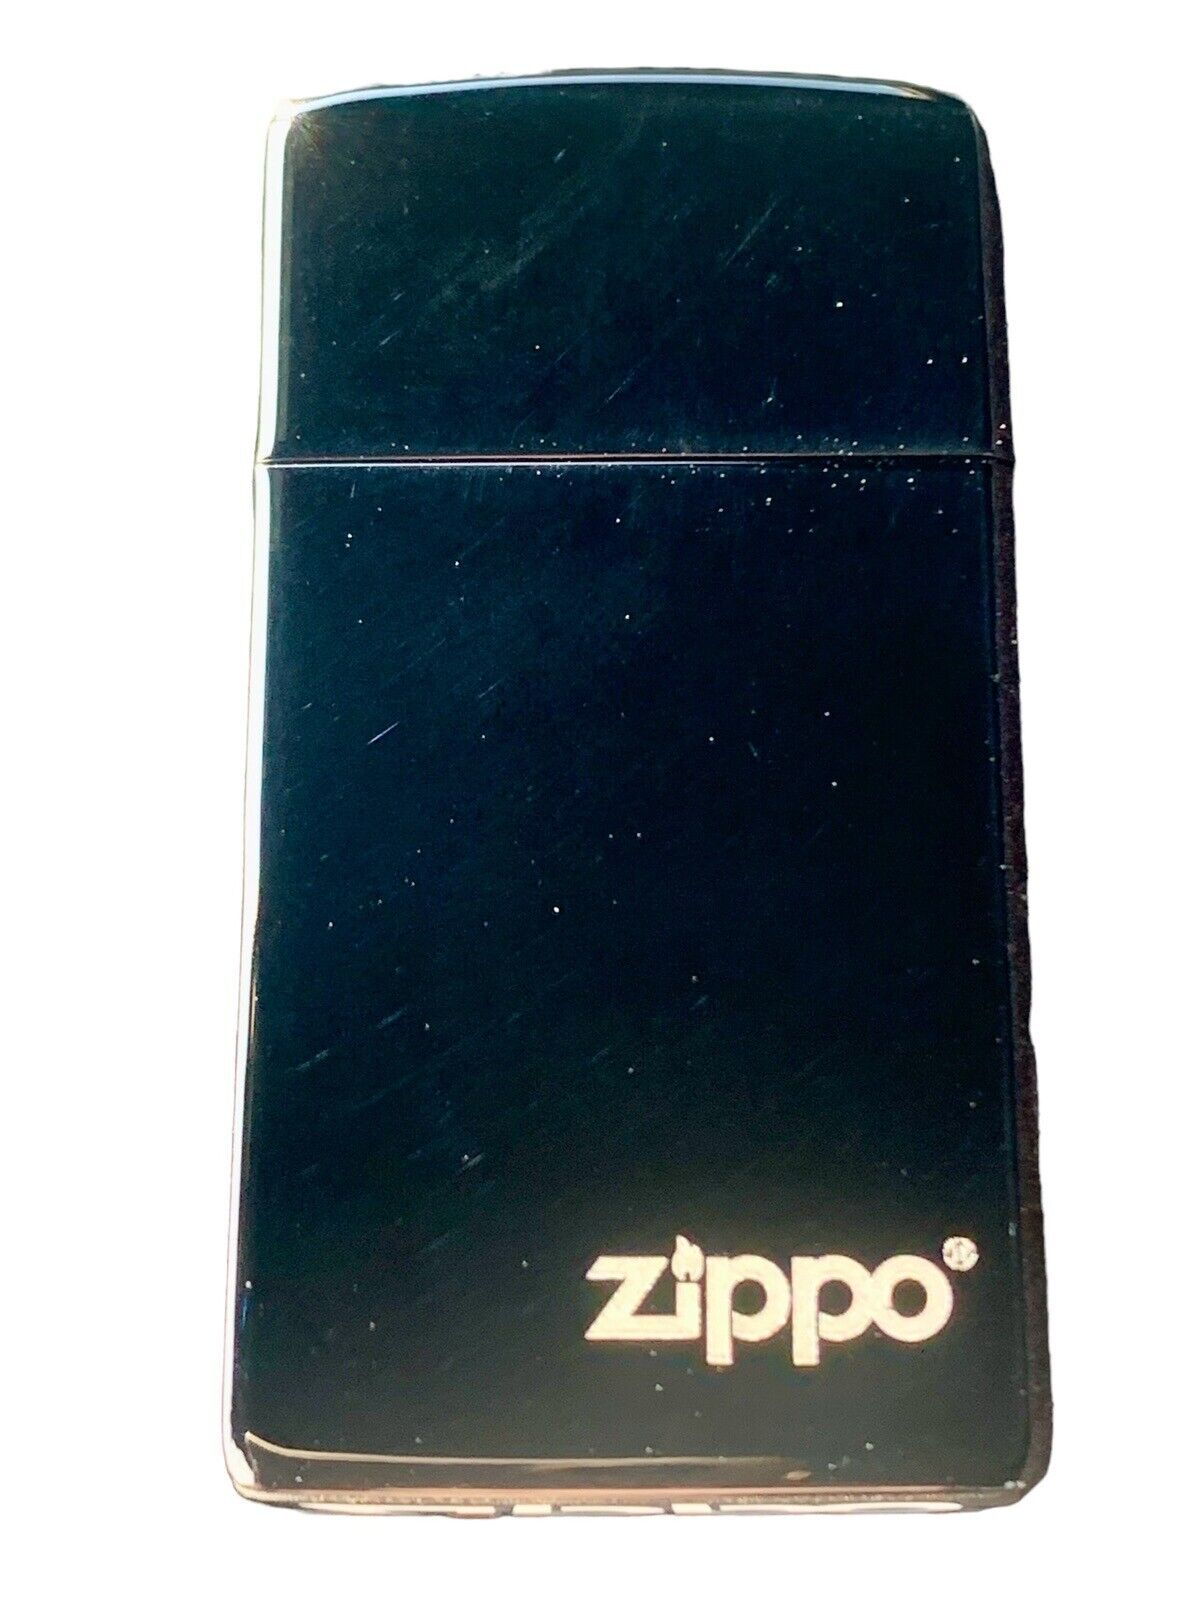 Zippo Lighter Slim Ebony High Polish 28123ZL K 12 New In Box